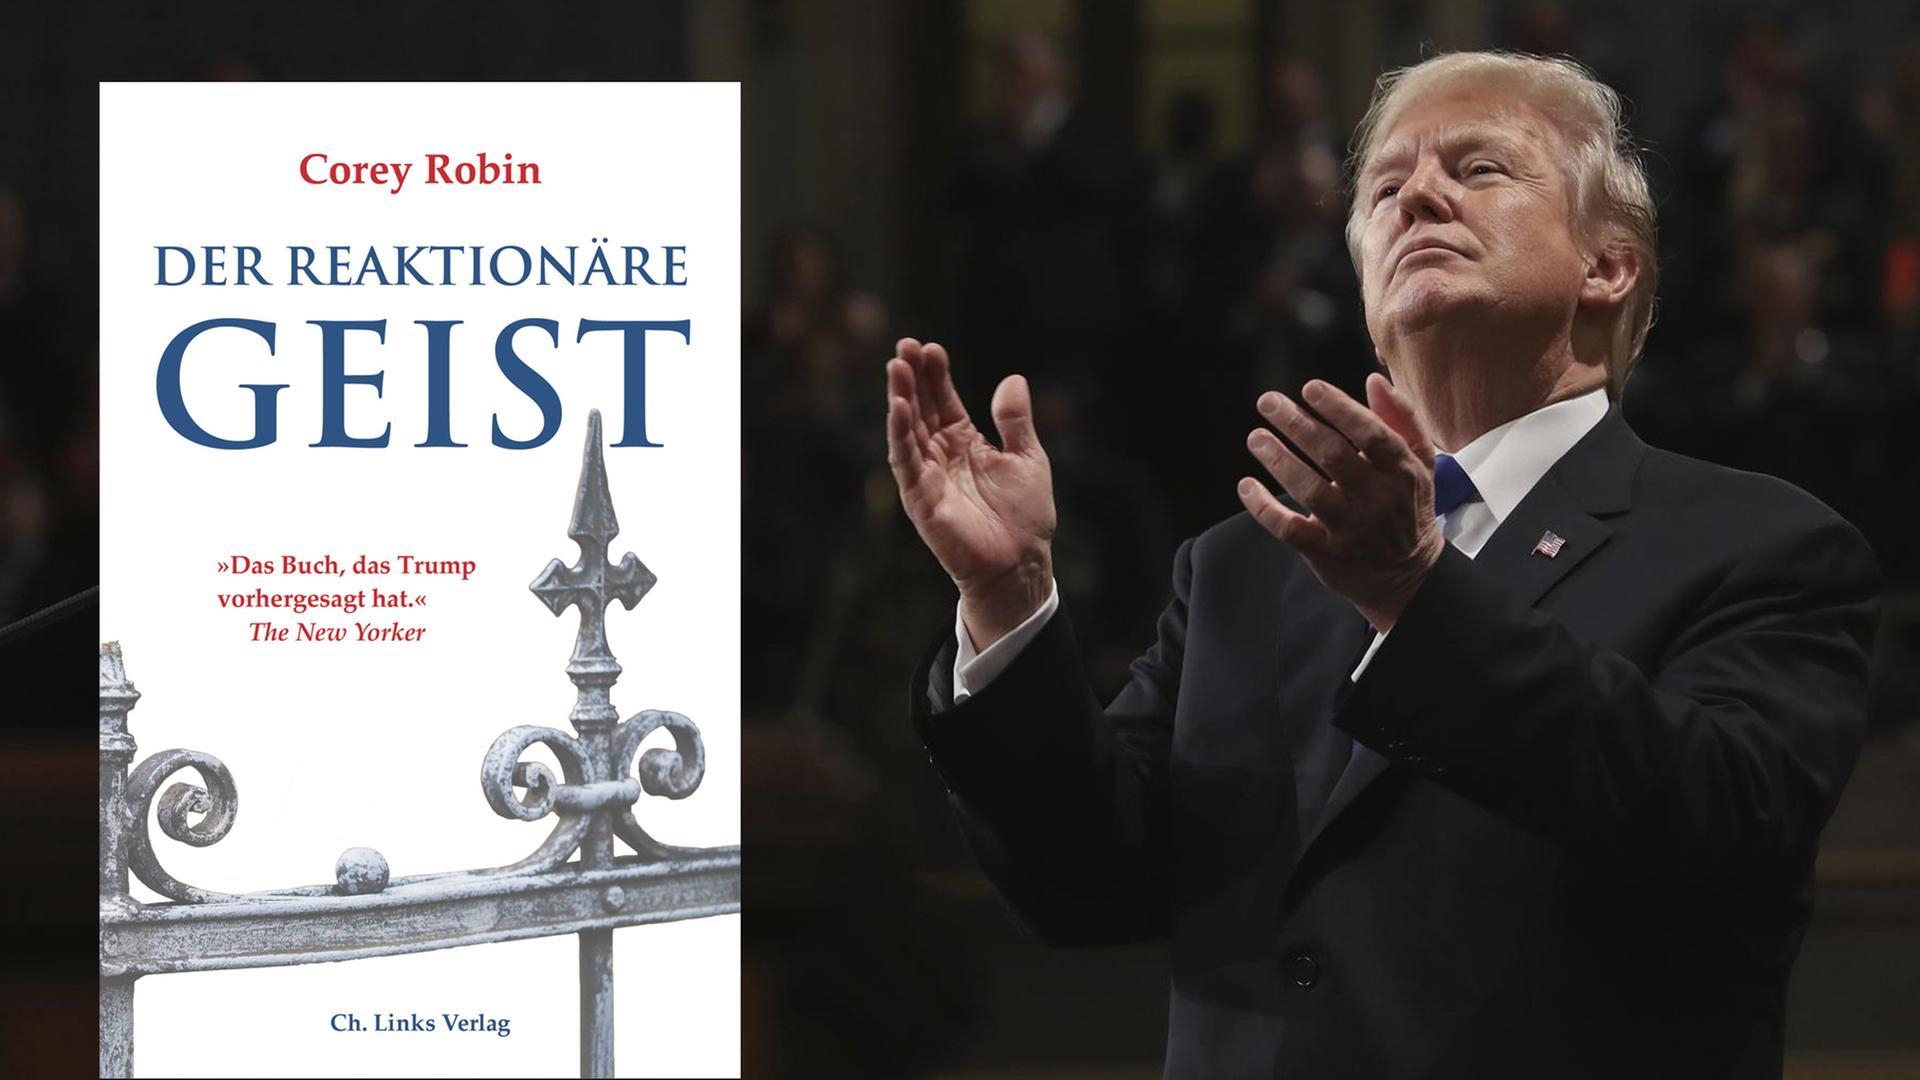 Der US-Präsident Donald Trump bei einer Rede, daneben das Cover des Buchs "Der reaktionäre Geist" von Corey Robin.